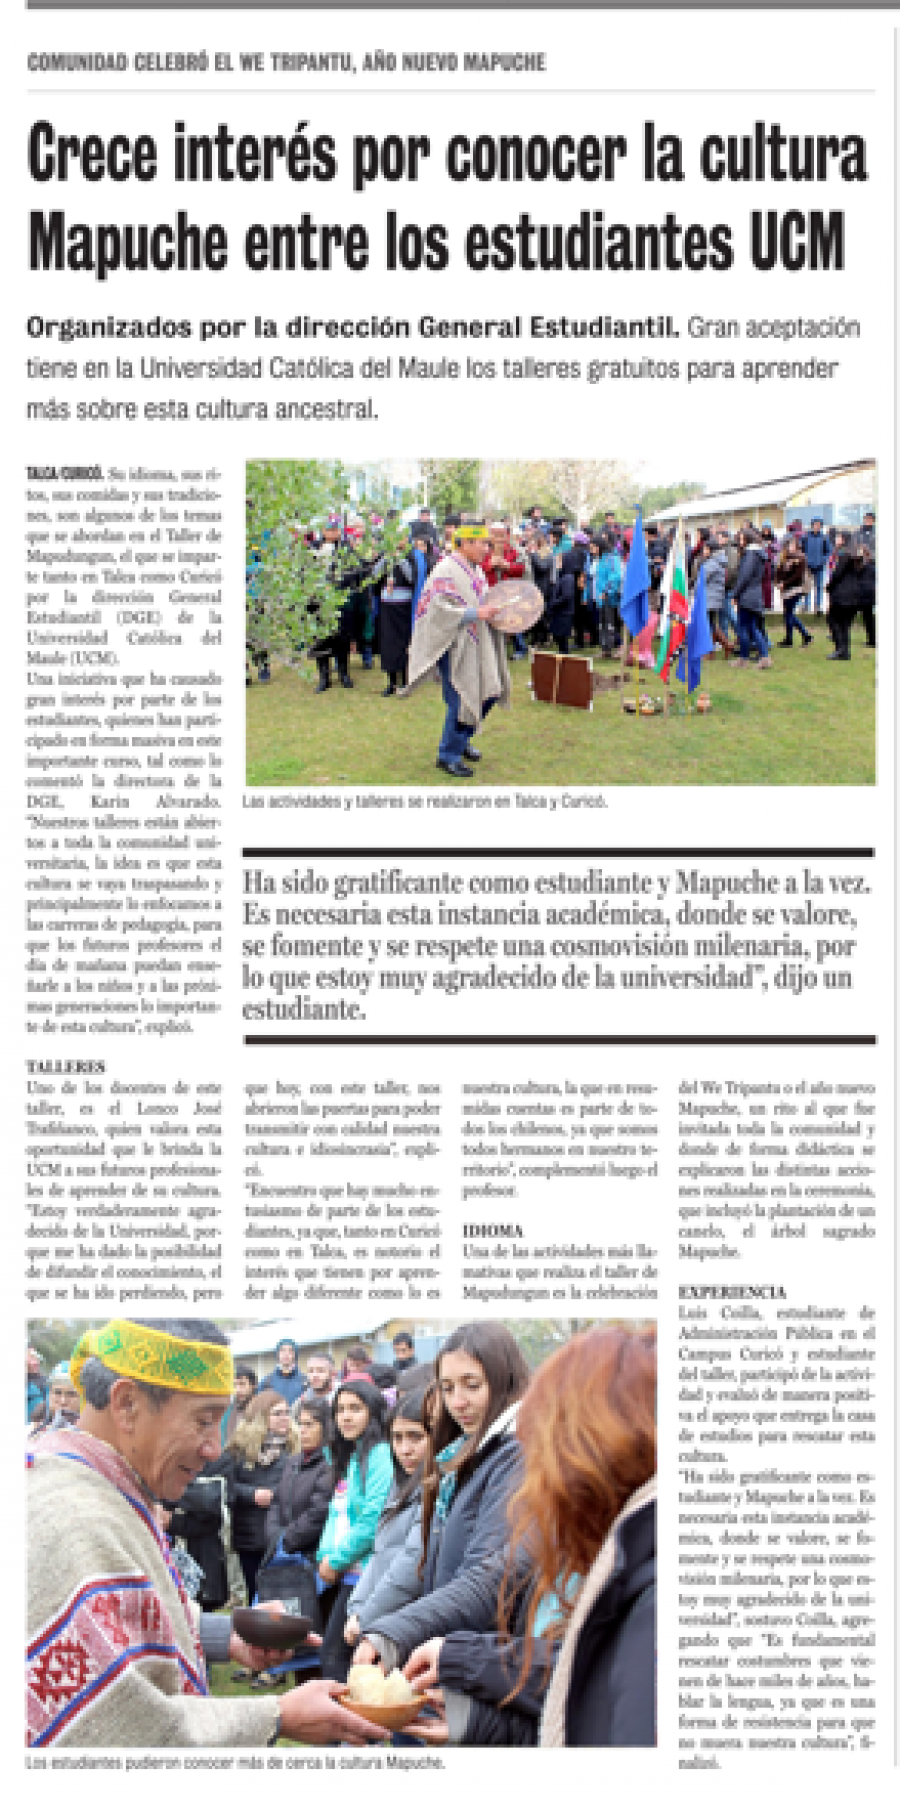 27 de junio en Diario La Prensa: “Crece interés por conocer la cultura Mapuche entre los estudiantes UCM”